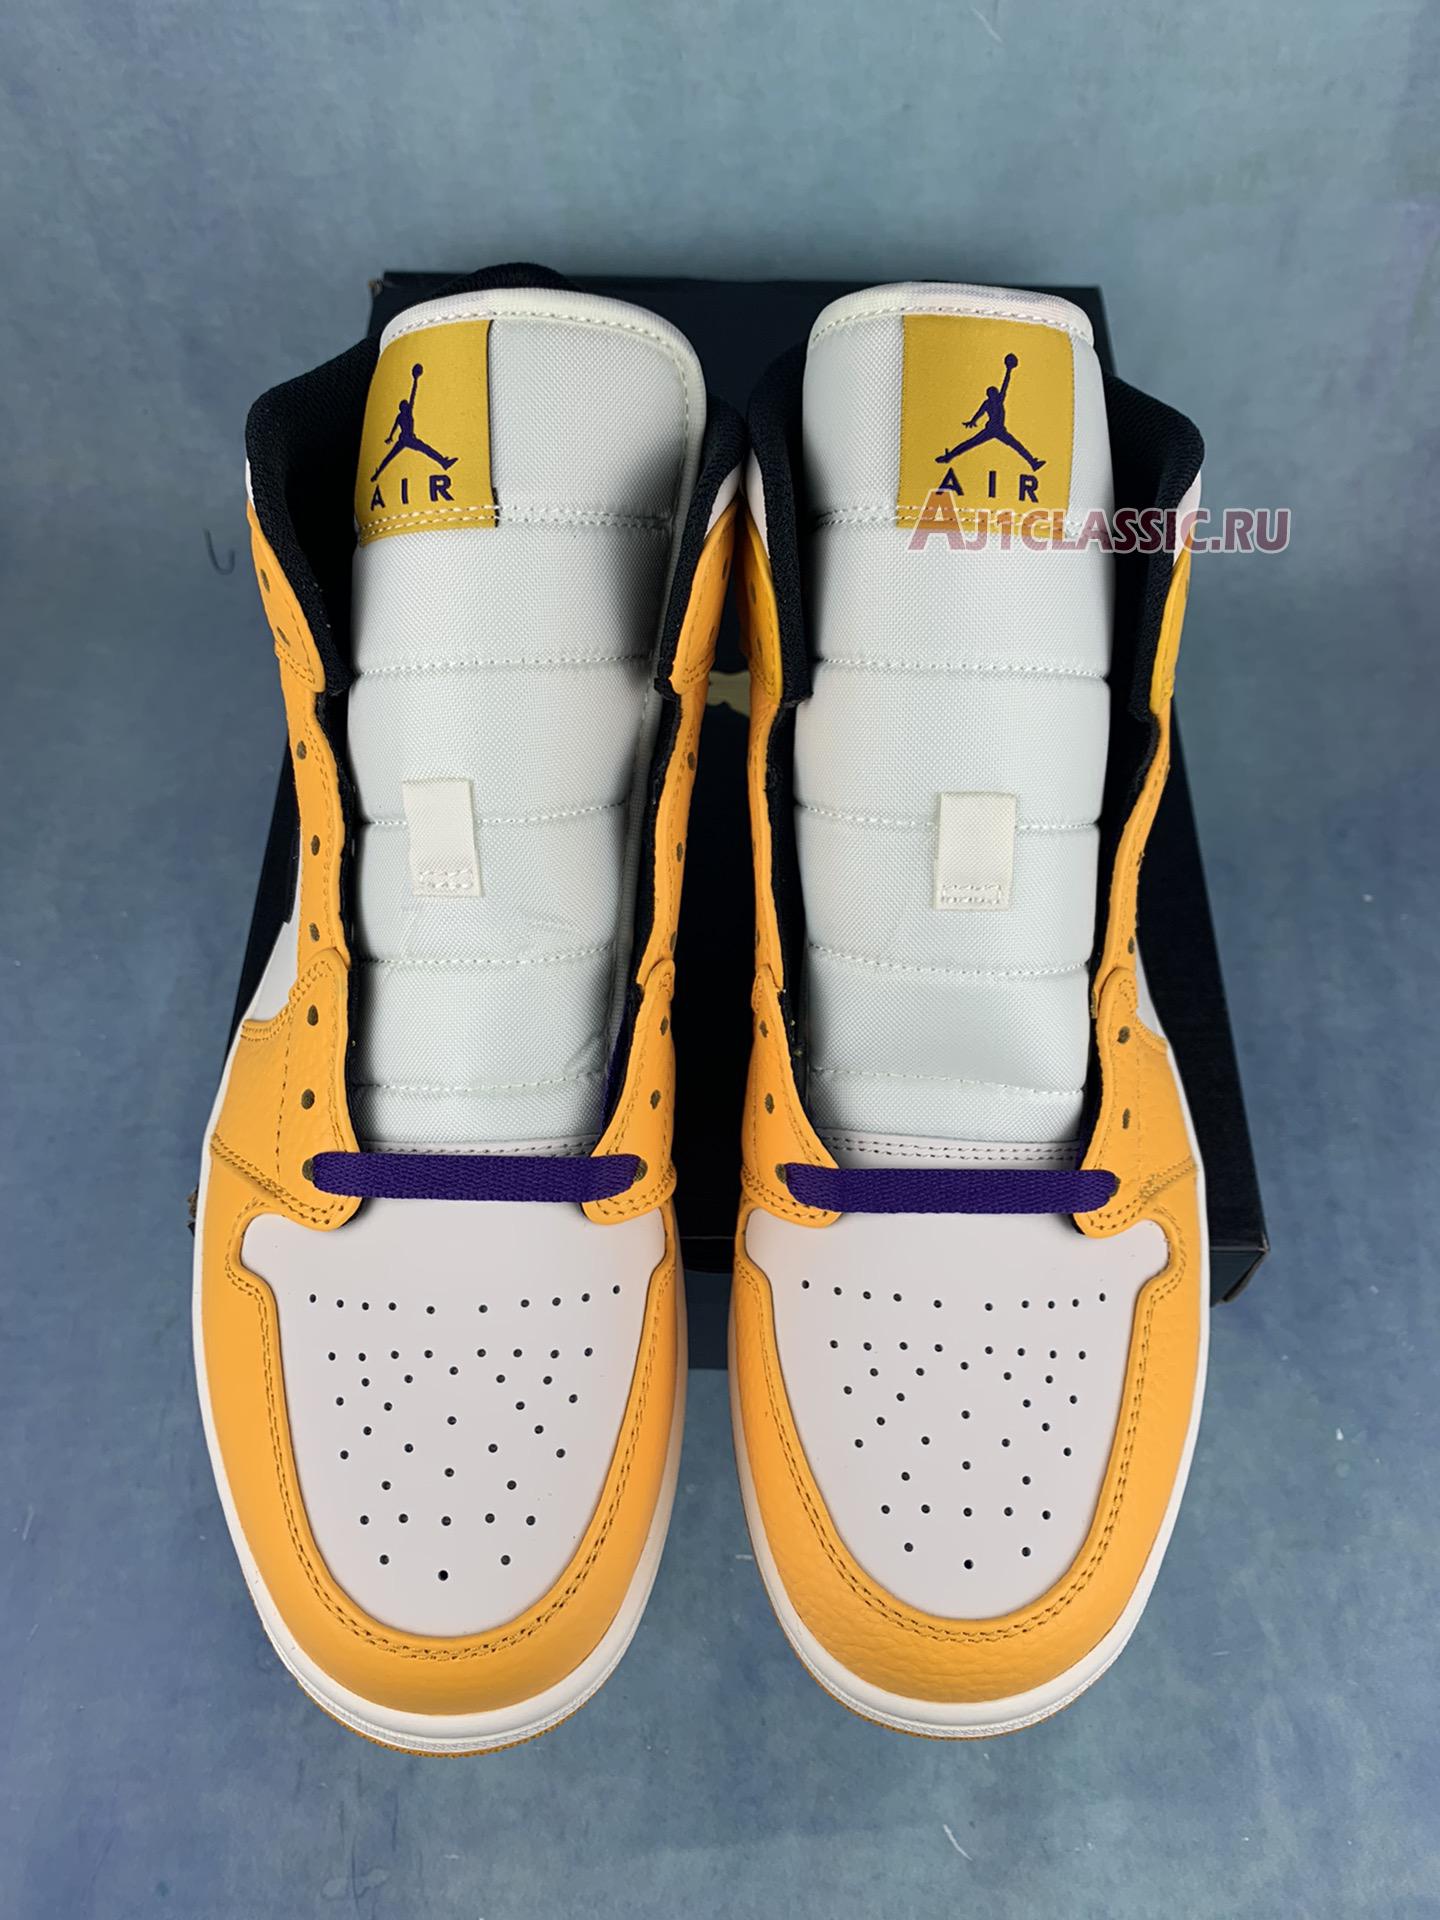 Air Jordan 1 Mid GS "Lakers" BQ6931-700